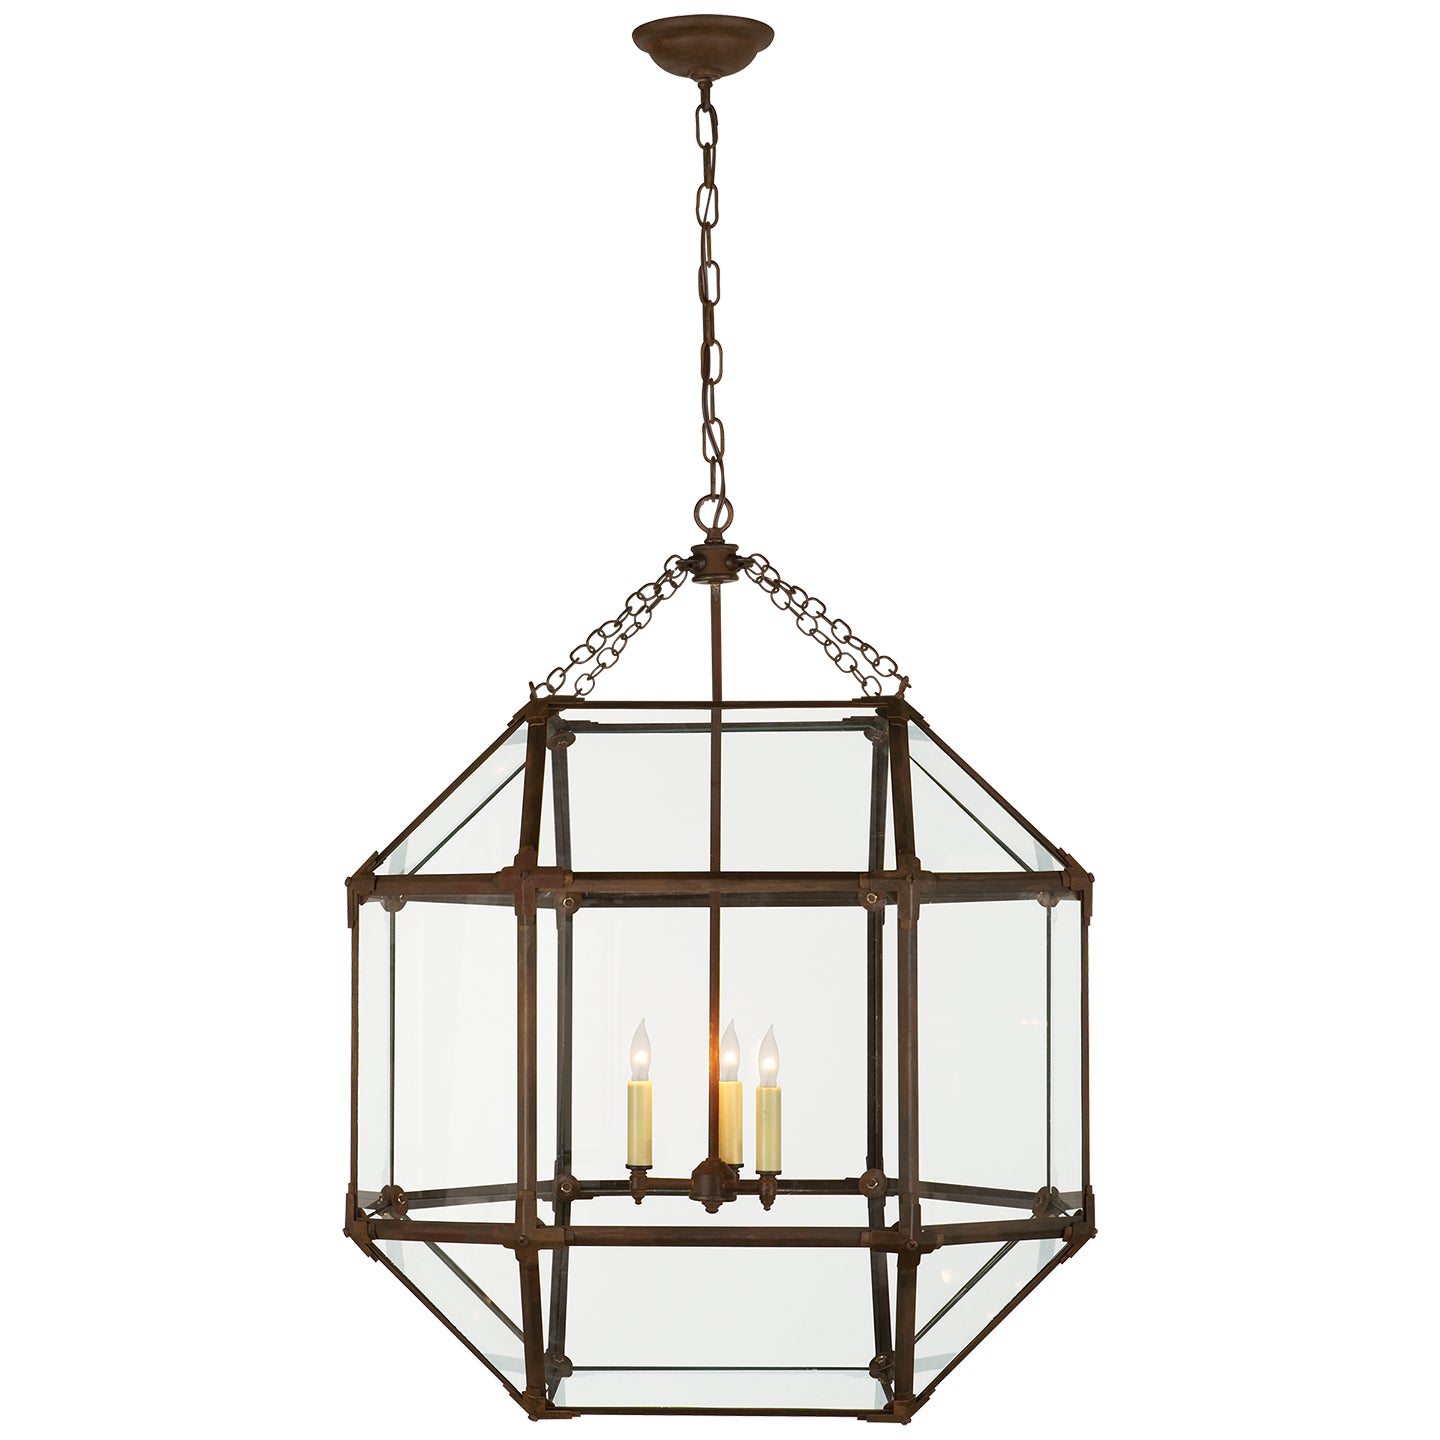 Visual Comfort Signature Canada - Three Light Lantern - Morris - Antique Zinc- Union Lighting Luminaires Decor